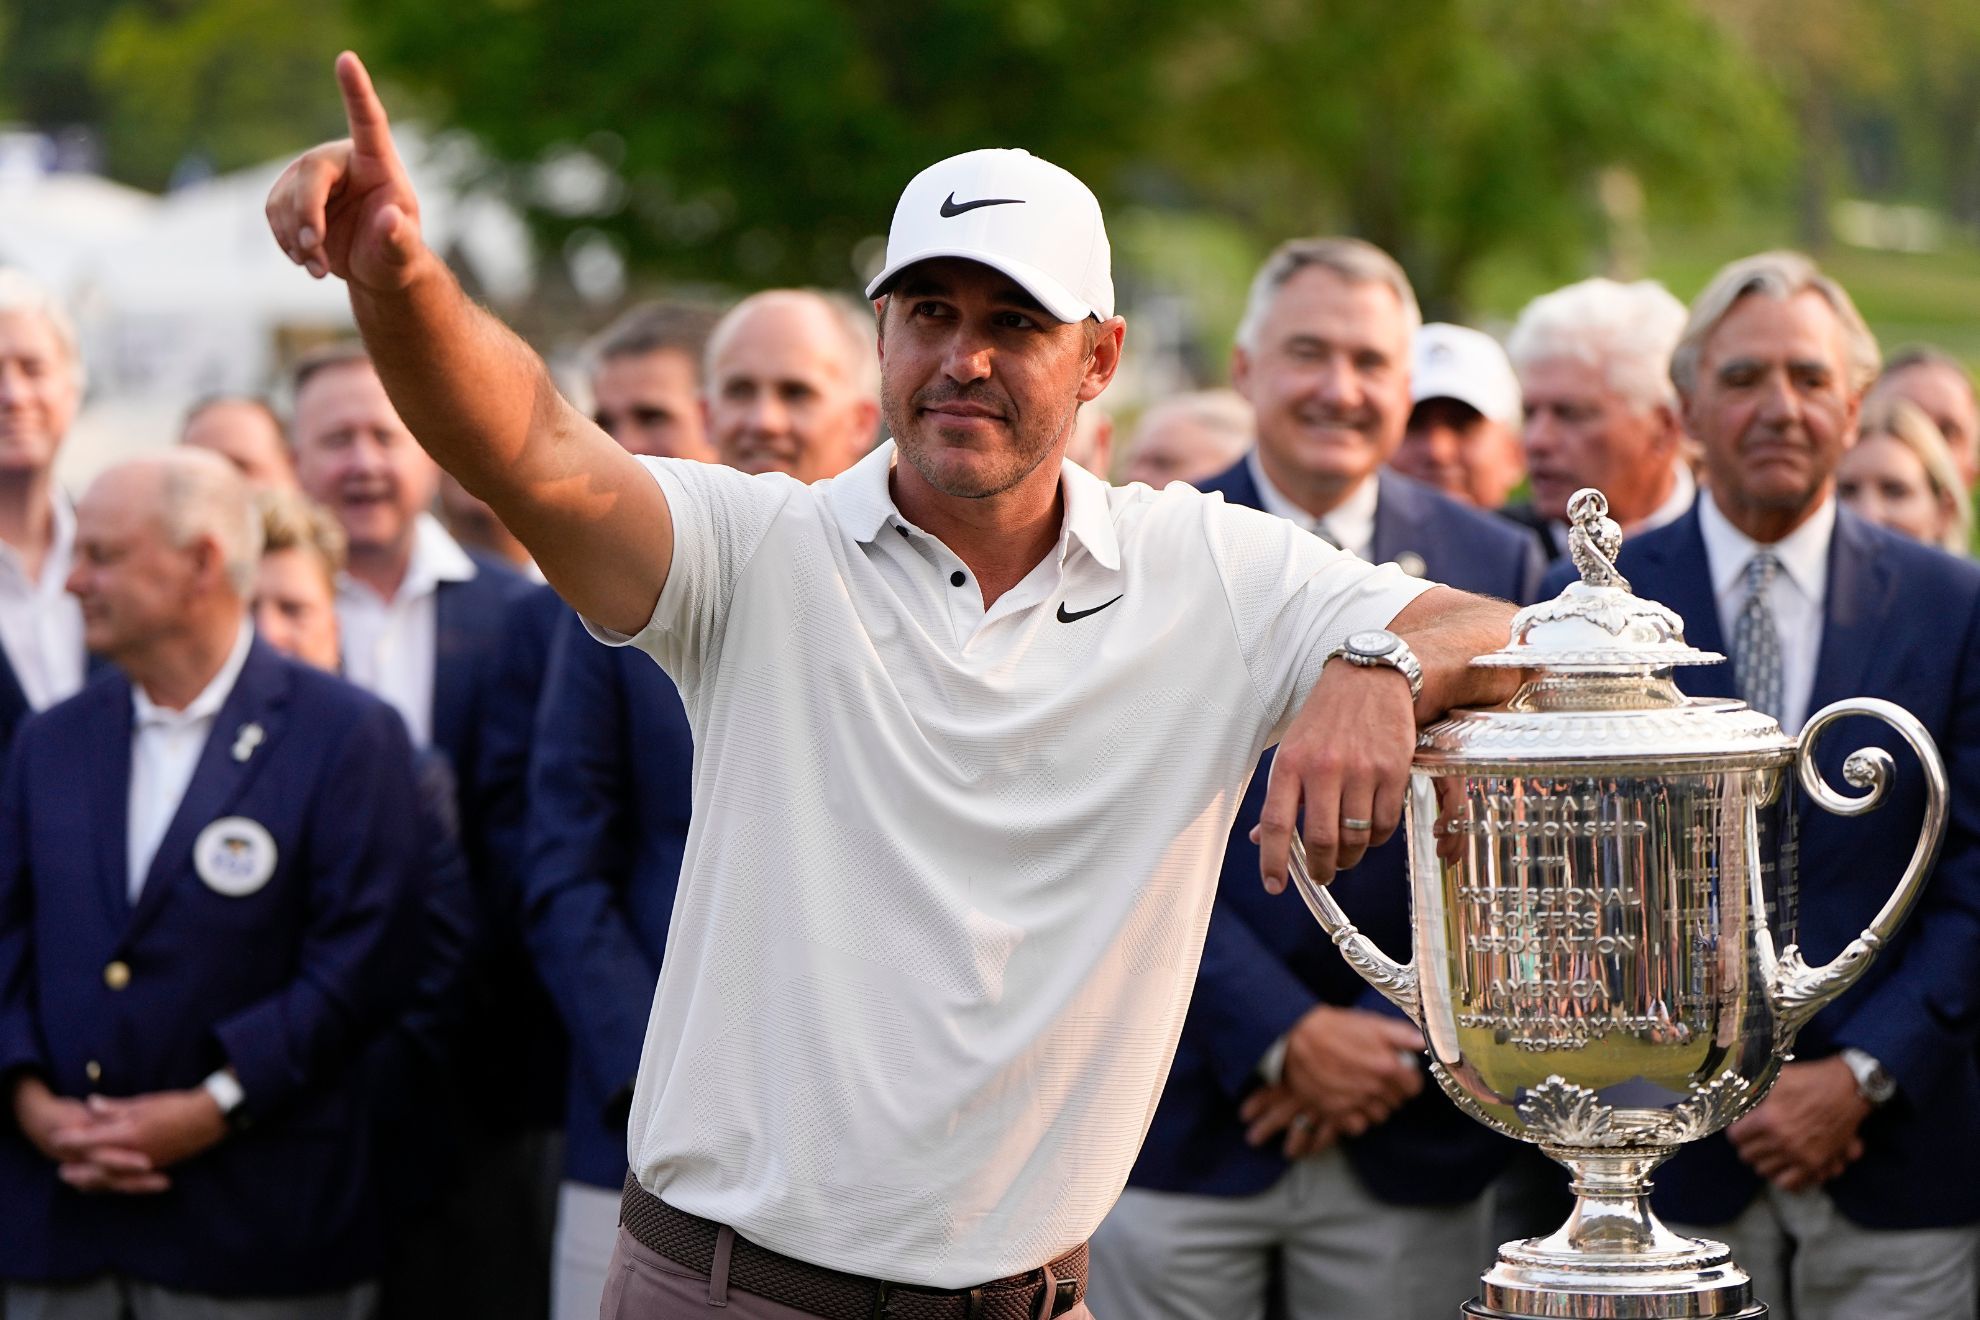 PGA Championship: Koepka wins, Scheffler earns top rank and Block parties